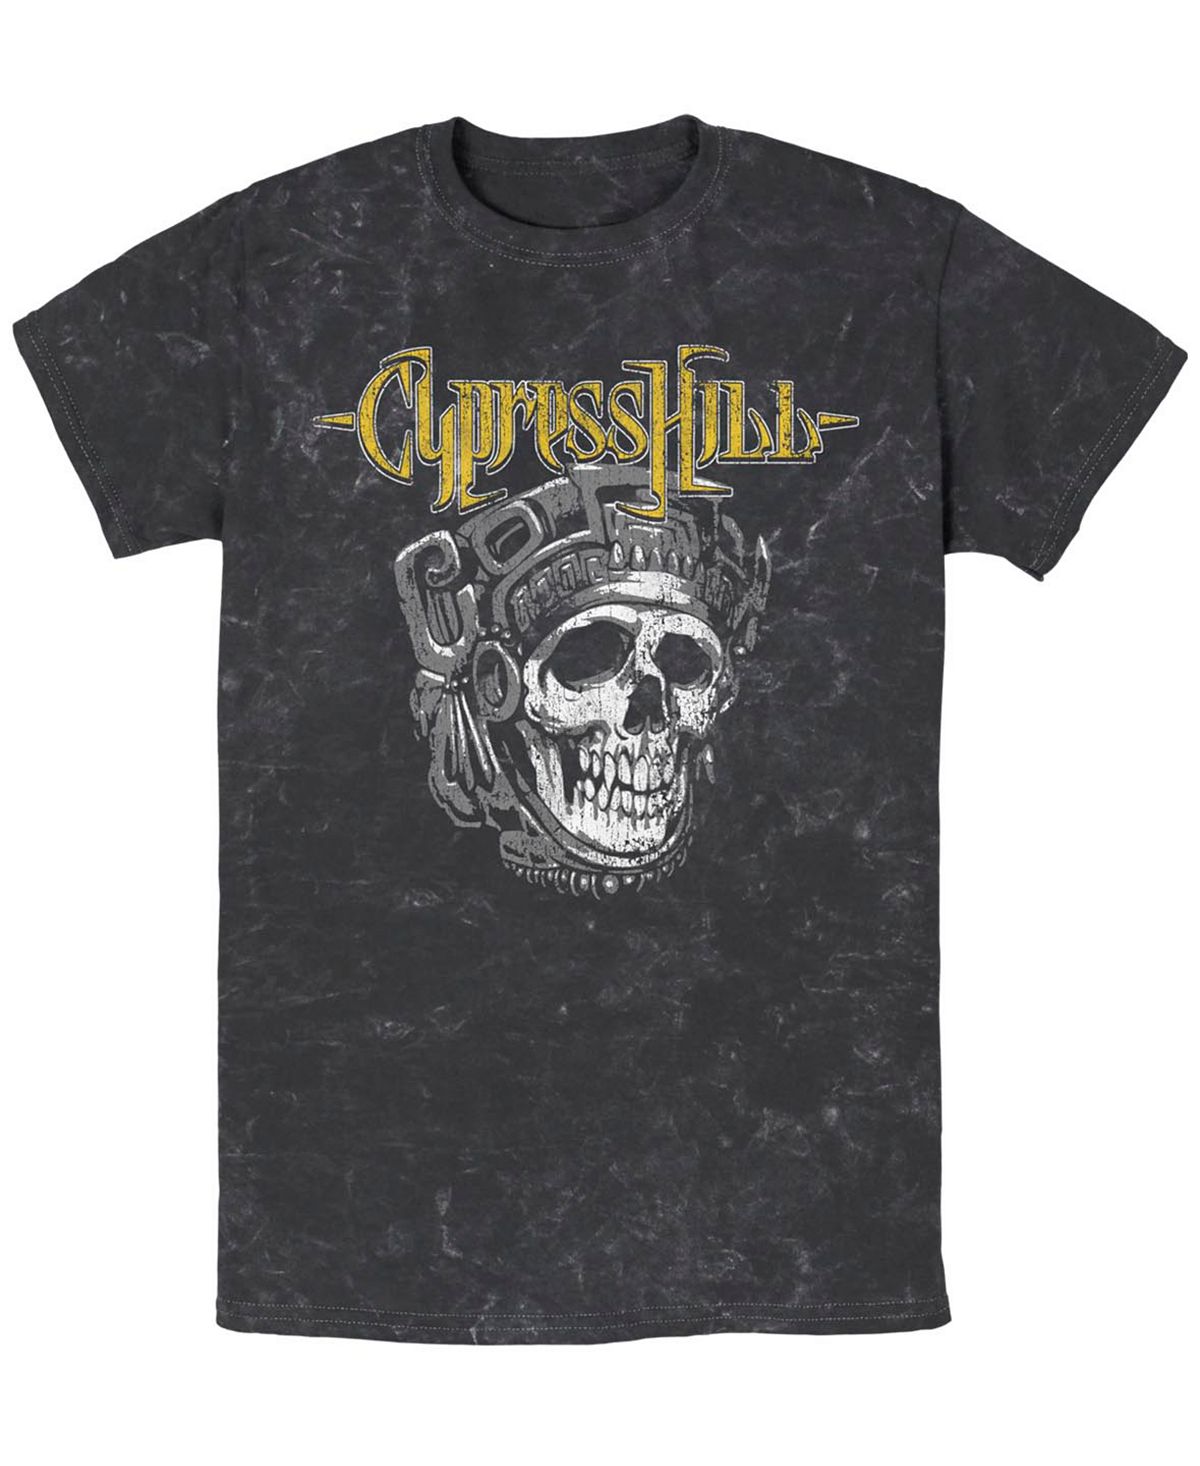 Мужская футболка с коротким рукавом cypress hill aztec skull Fifth Sun, черный